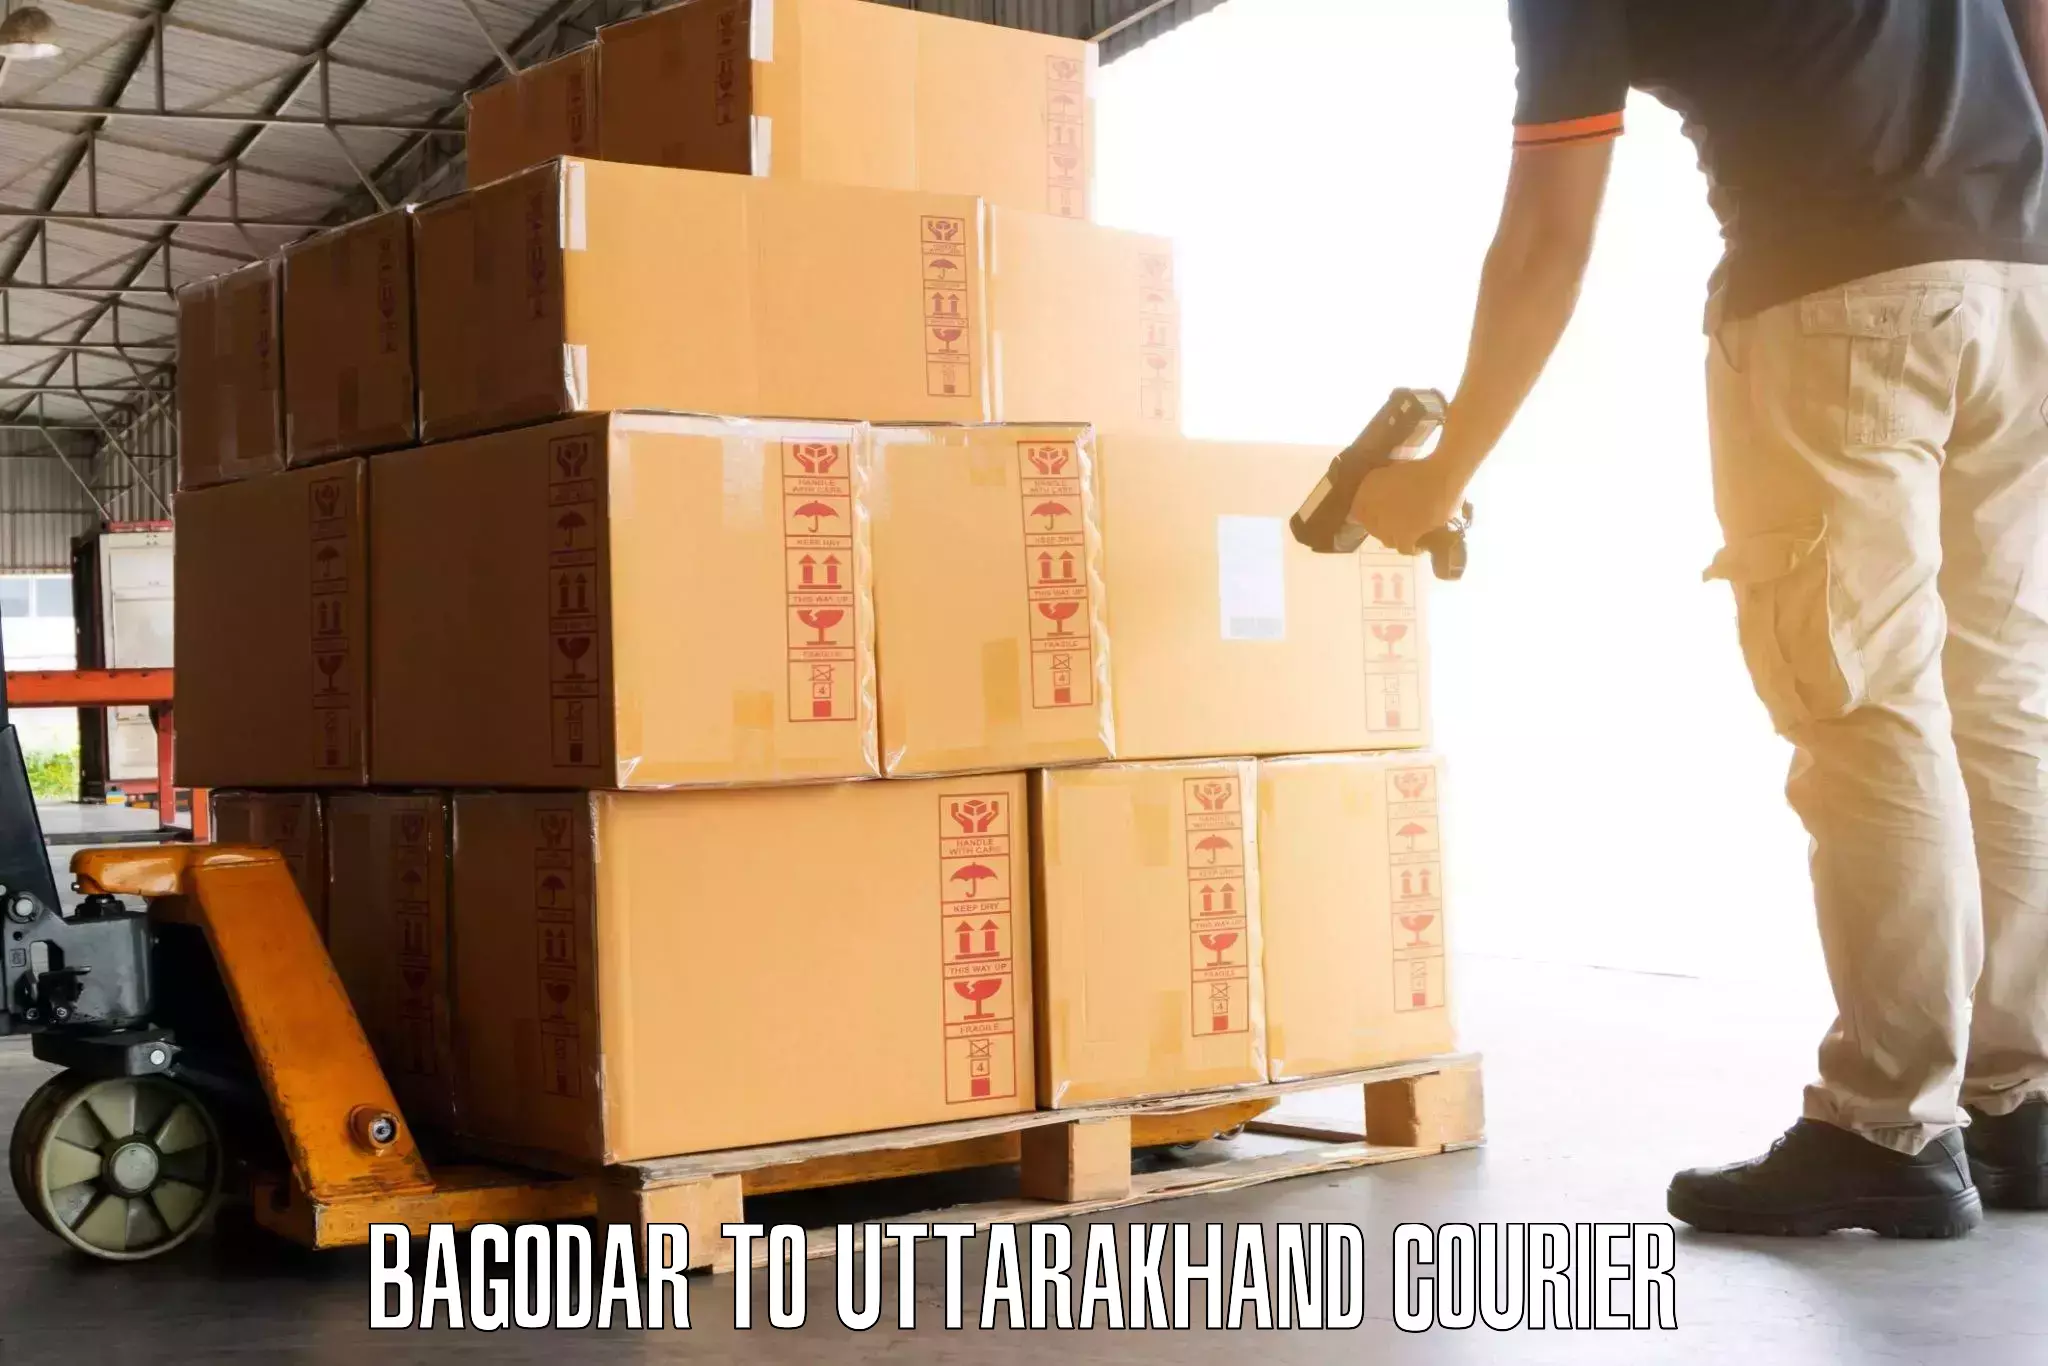 Baggage transport network Bagodar to Uttarakhand